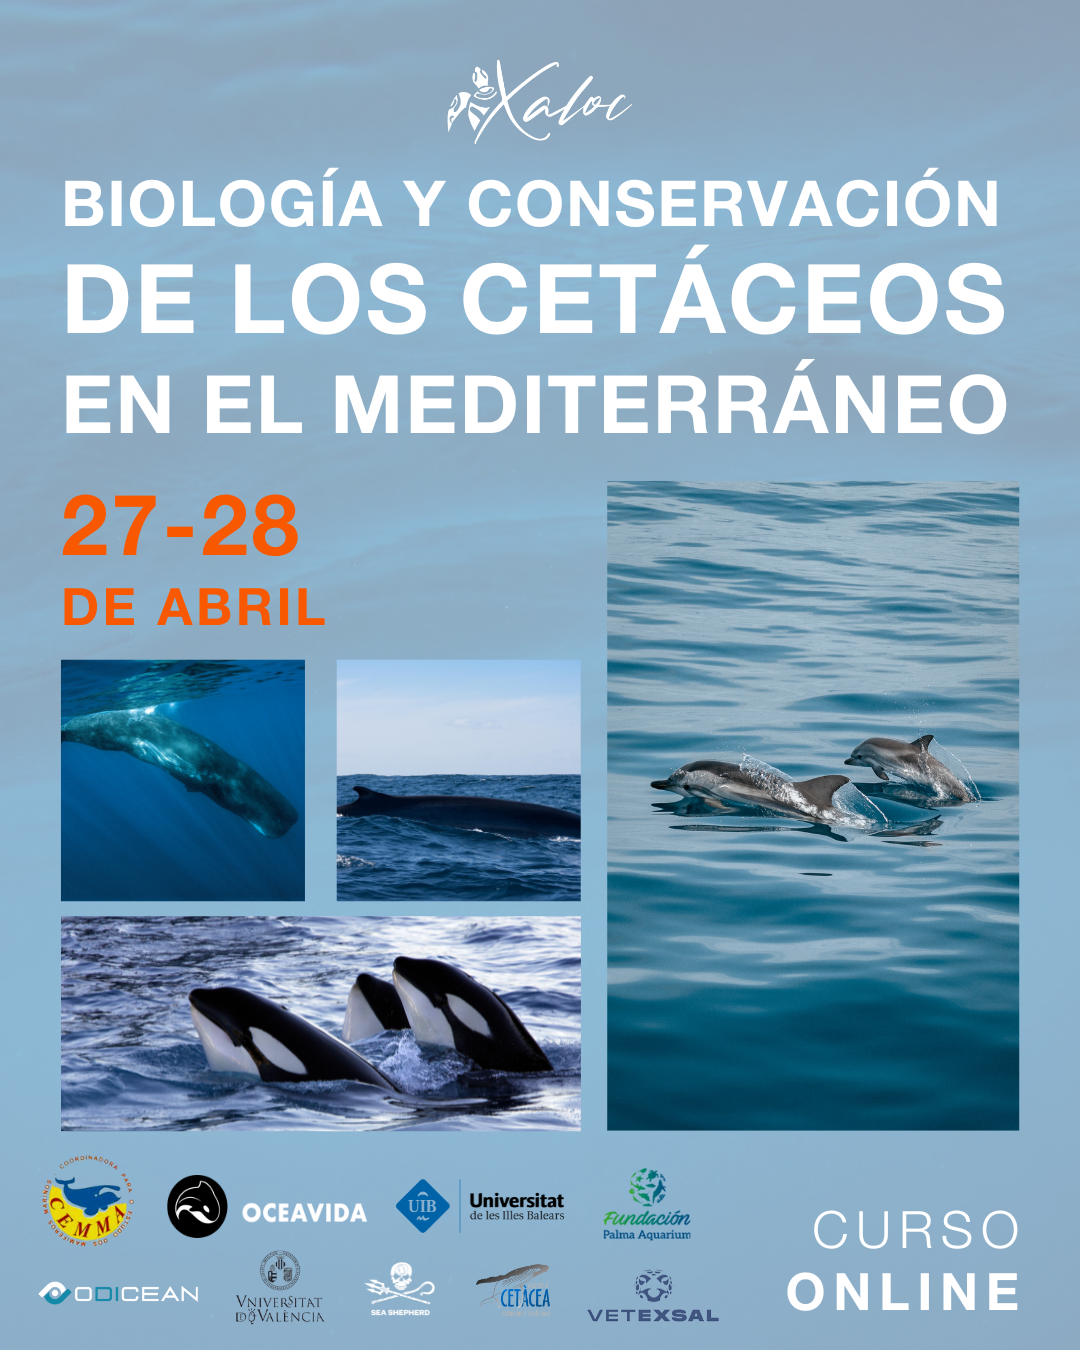 Curso Online: Biología y Conservación de Cetáceos del Mediterráneo